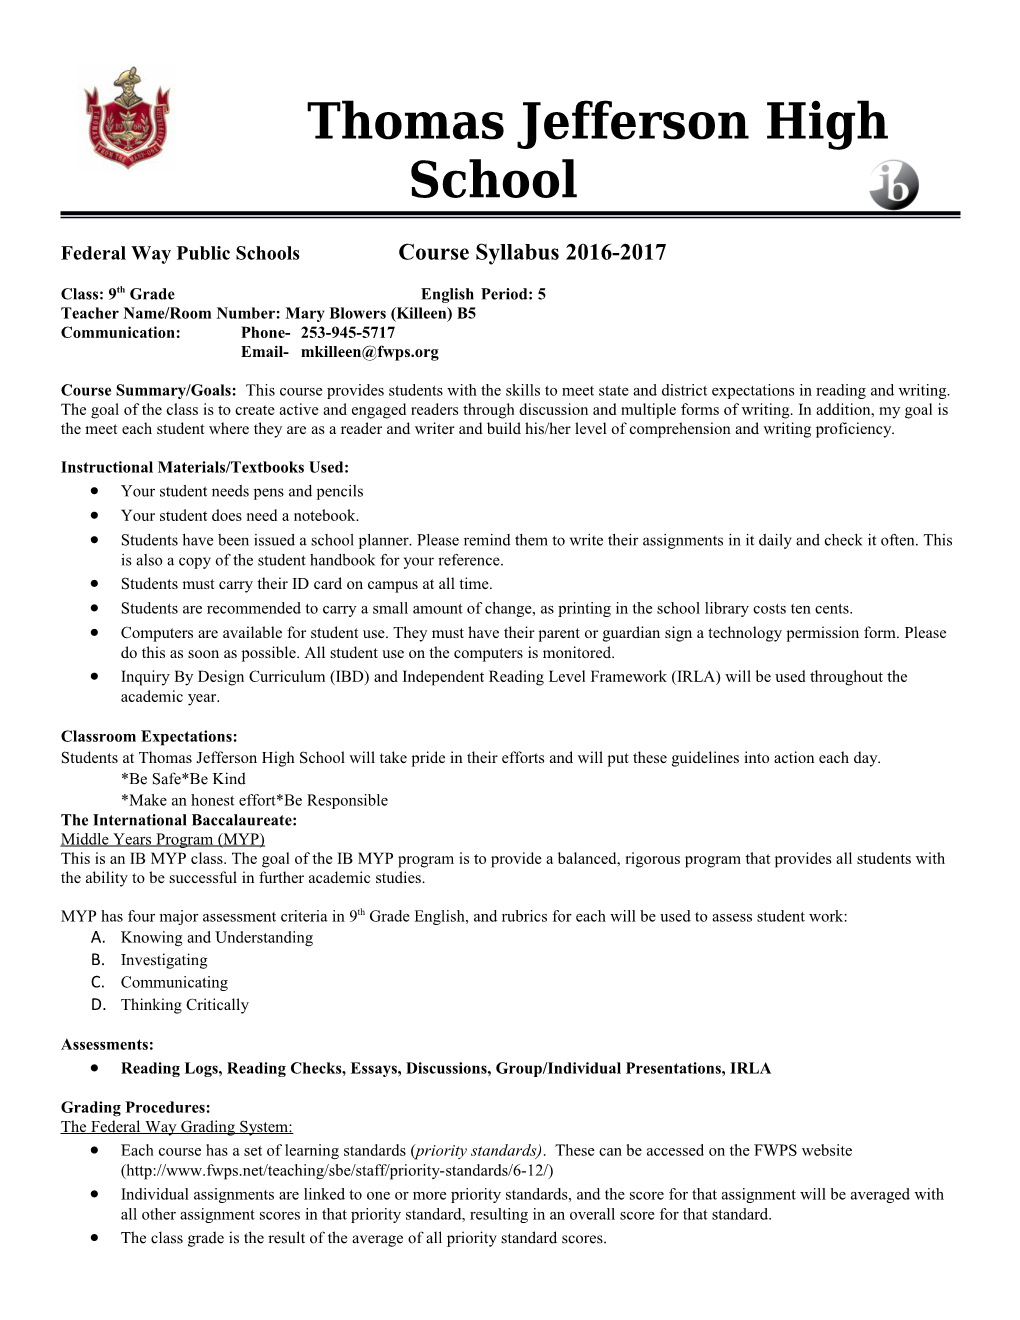 Federal Way Public Schools Course Syllabus 2016-2017